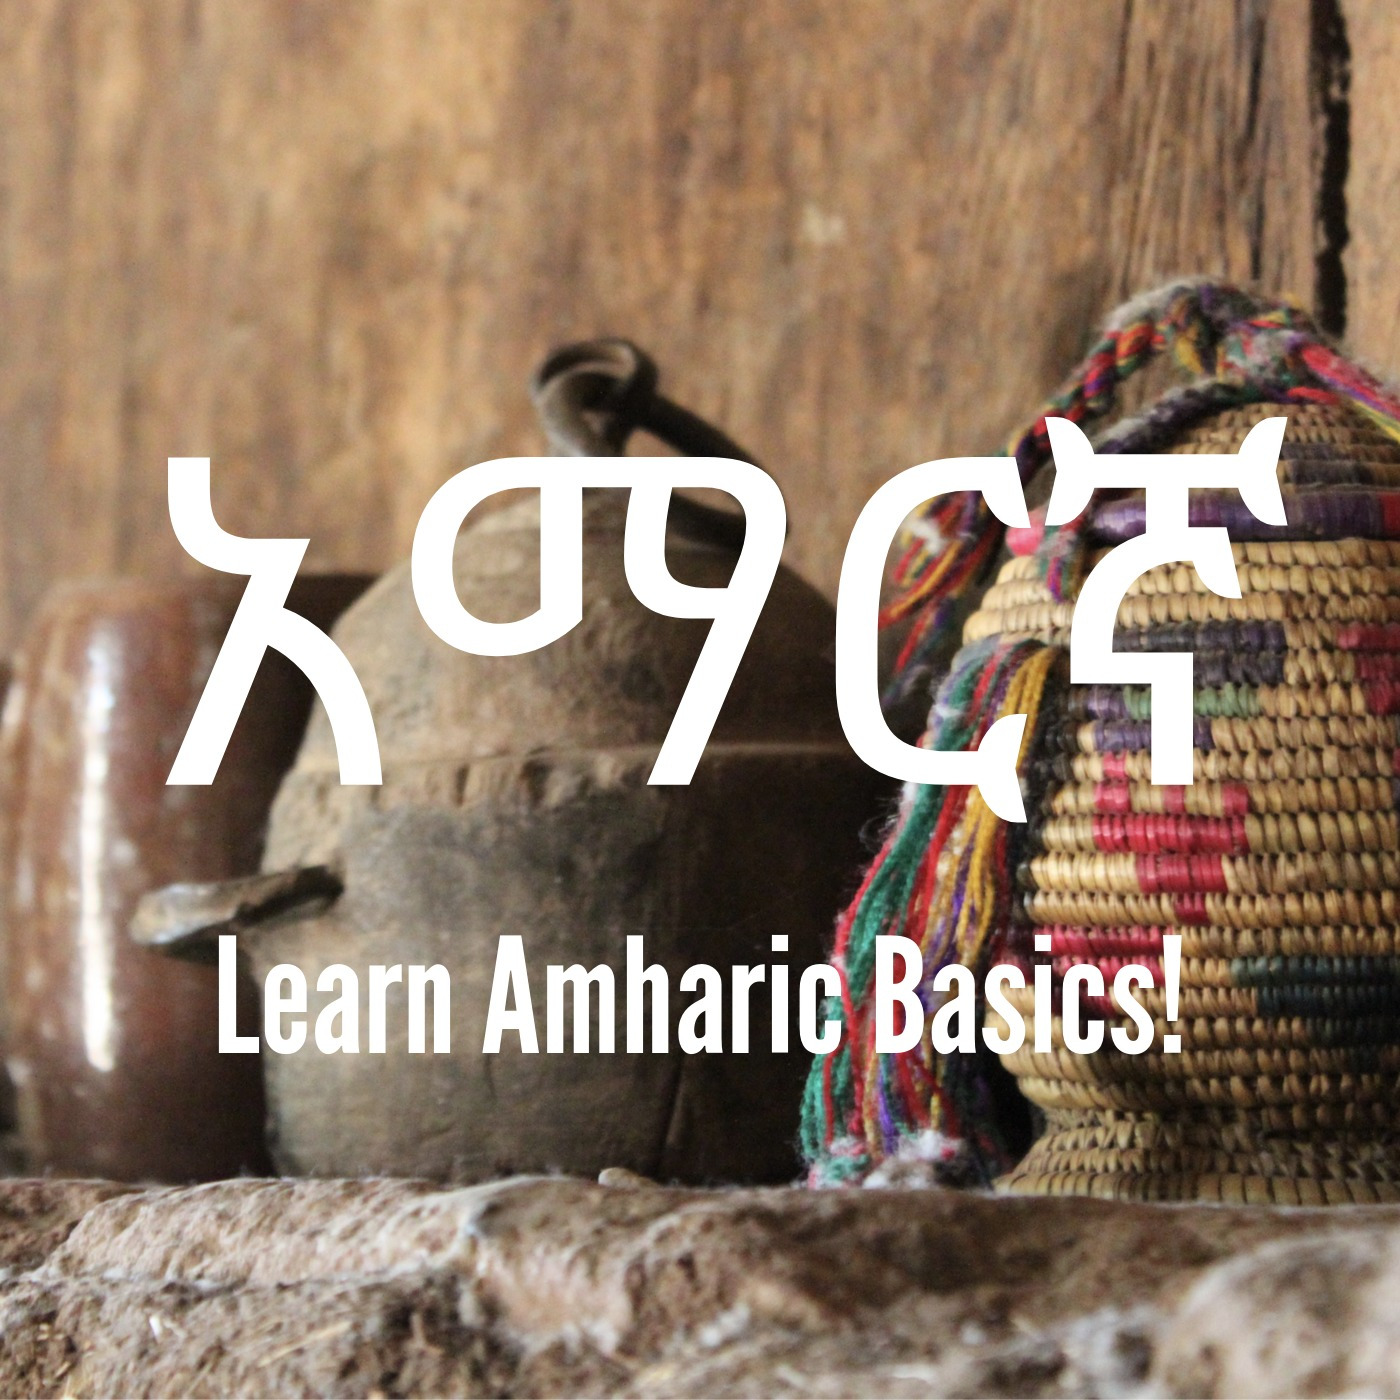 Learn Amharic Basics! - Unit 3